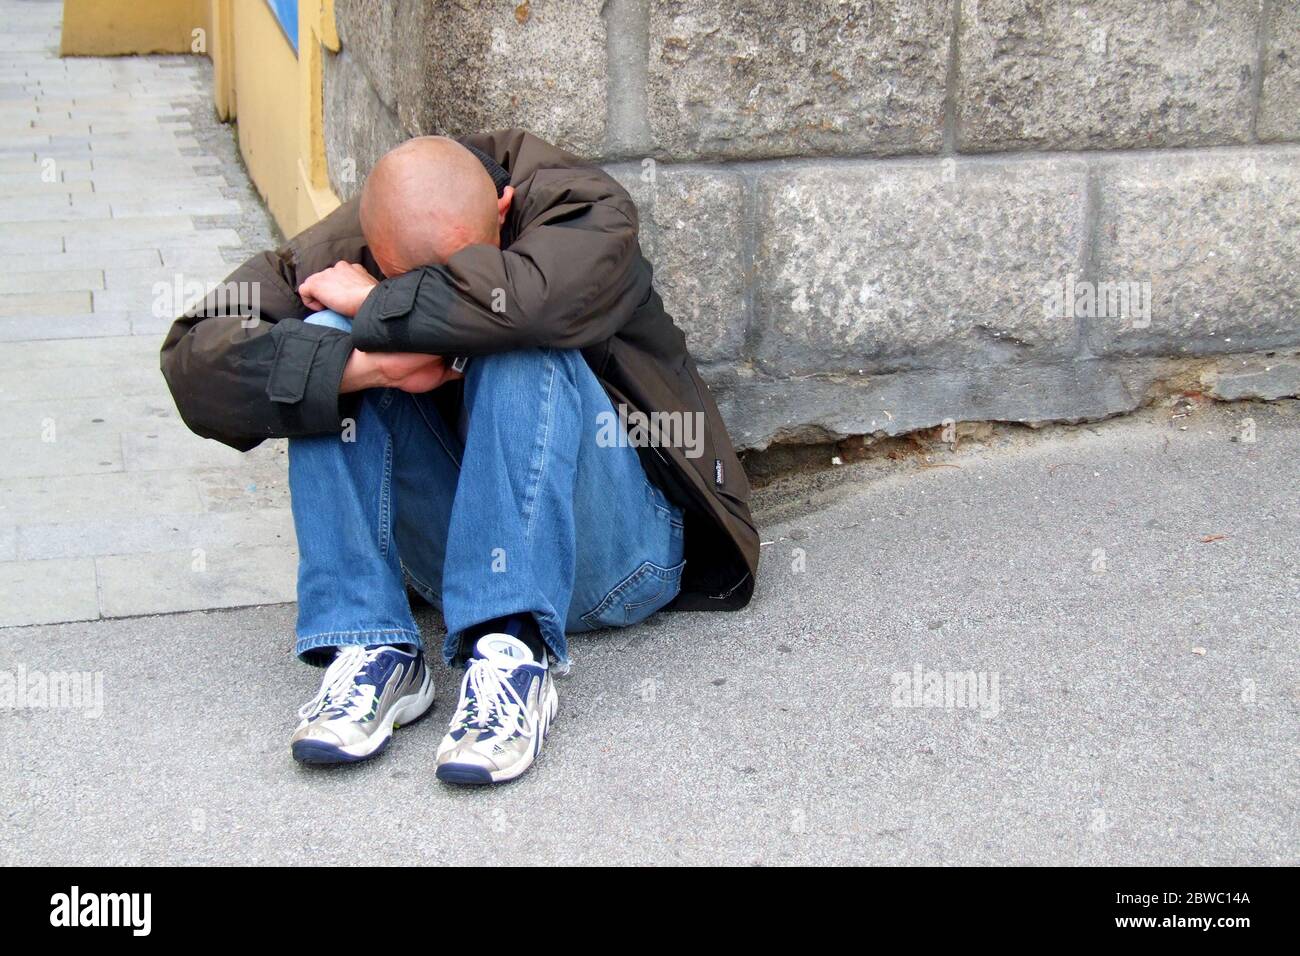 Verzweifelter Mann sitzt auf der Strasse, Bettler, Arbeitsloser, Ruiniert, Obdachloser, MR: Yes Stock Photo